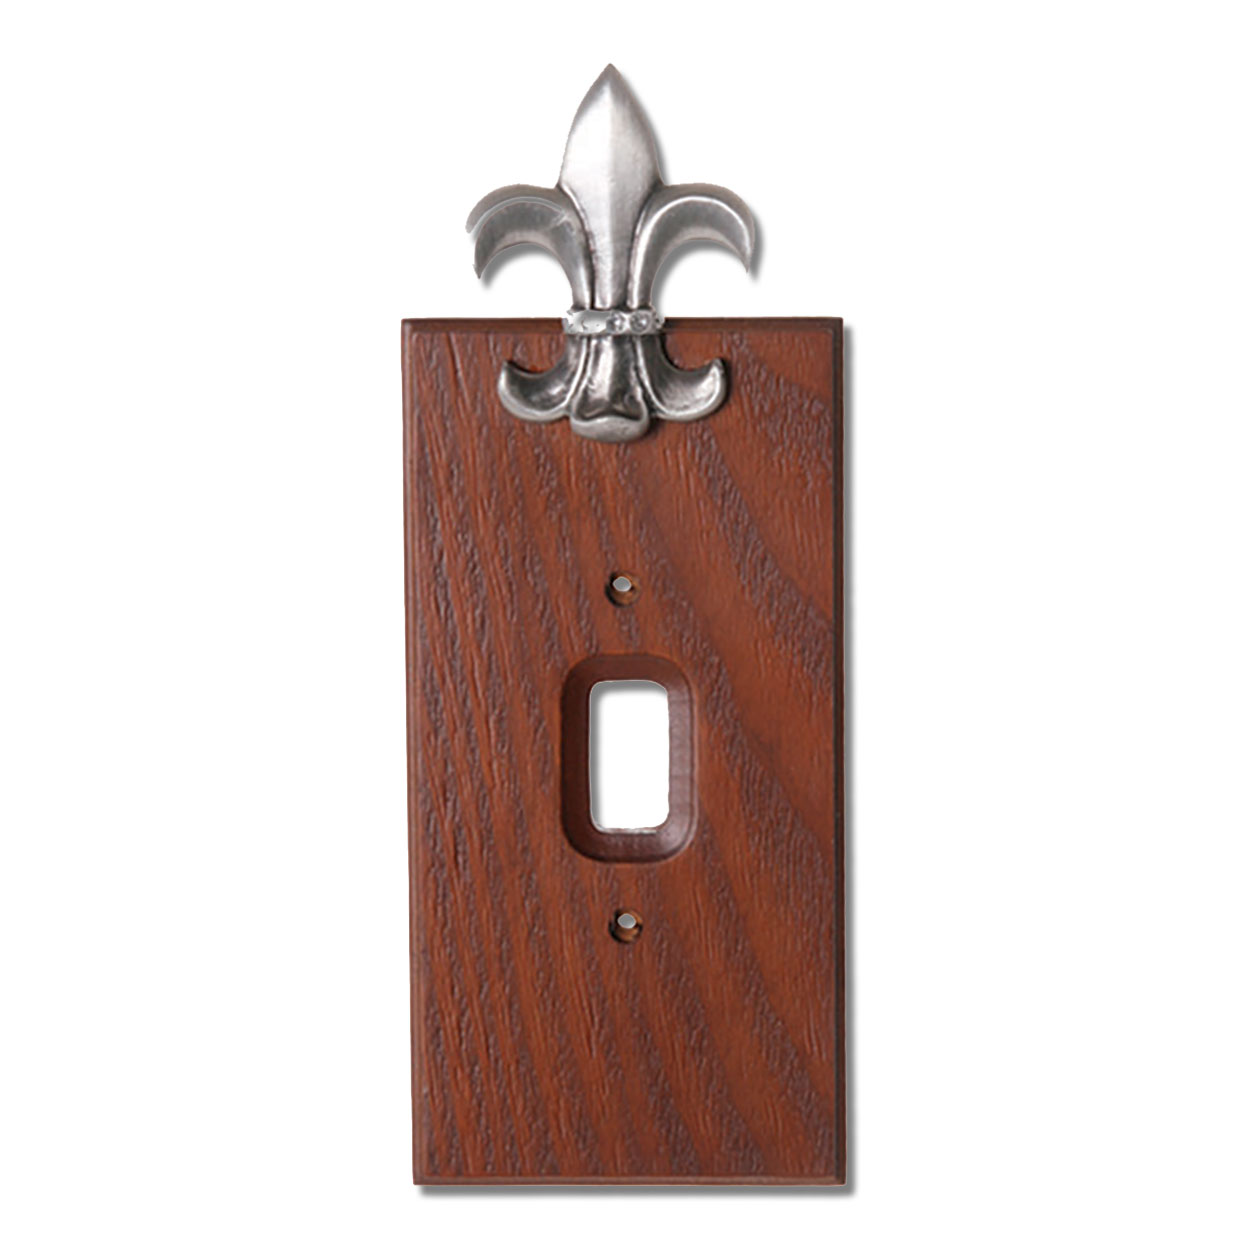 531382 - Lazart Fleur De Lis Pewter on Wood Single Standard Switch Plate